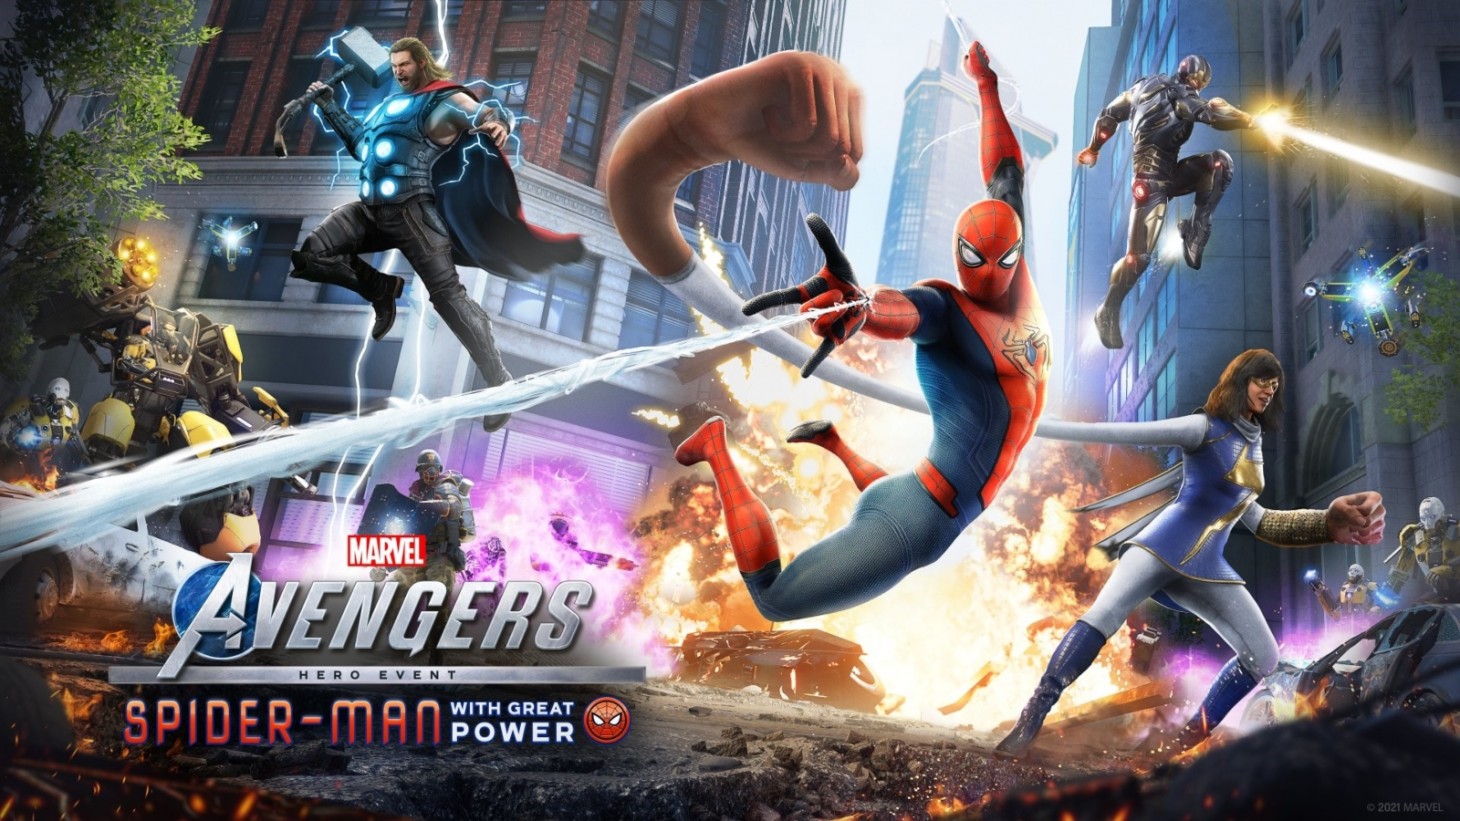 วิดีโอใหม่เปิดตัว Spider-Man ในเกม Marvel's Avengers เนื้อหาอัปเดตฟรีเฉพาะบน PlayStation 